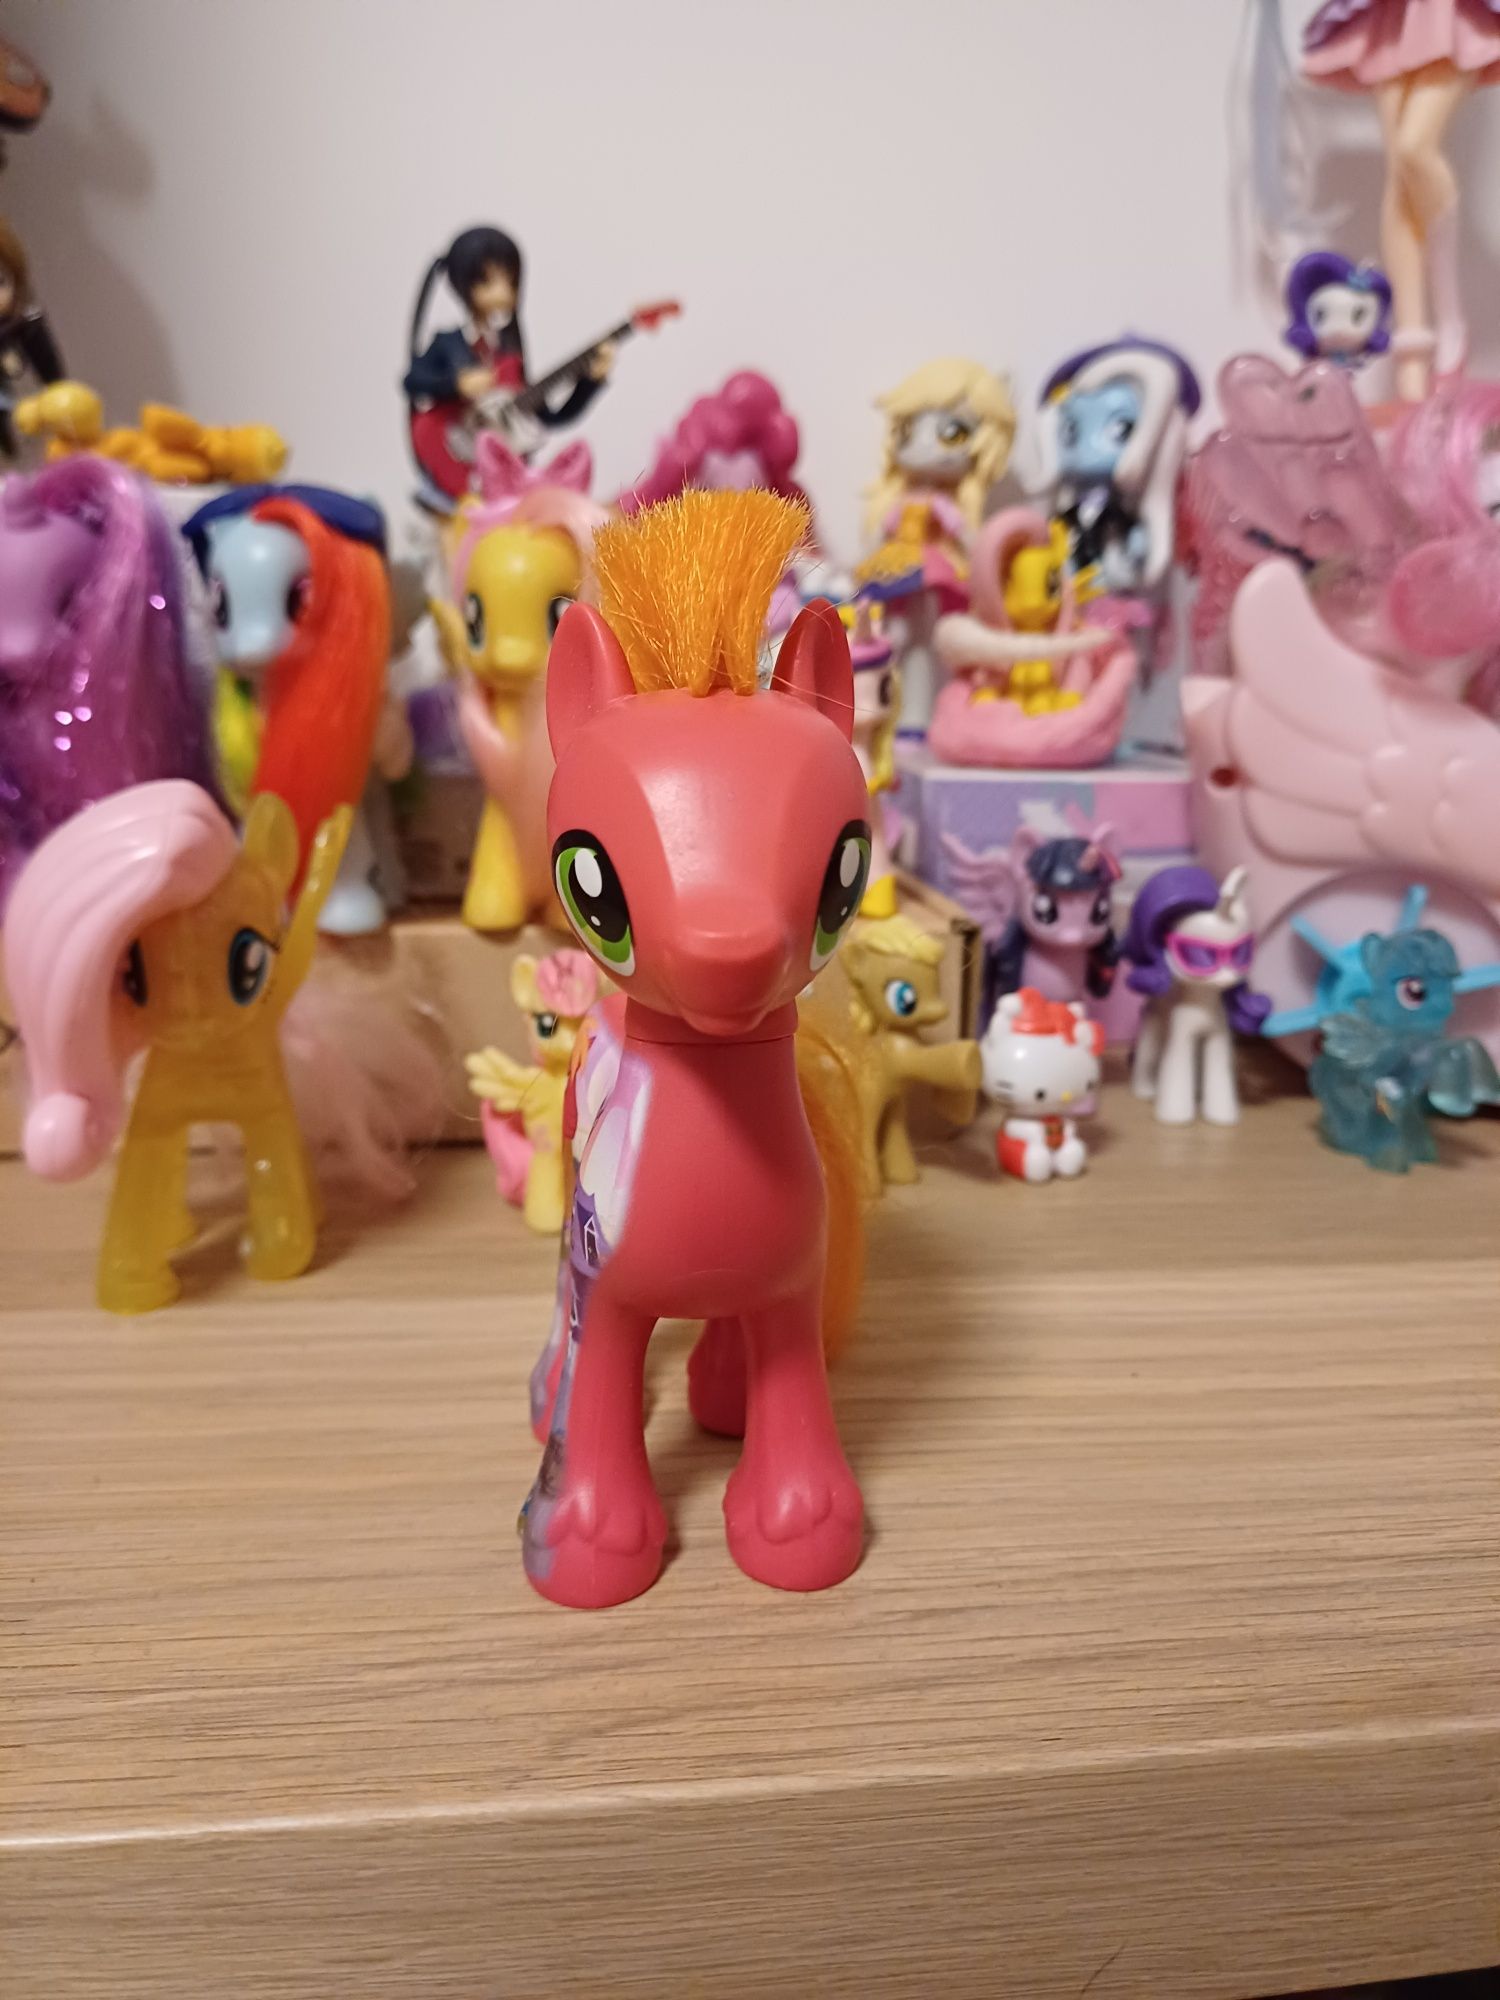 Ponei my little pony / mlp